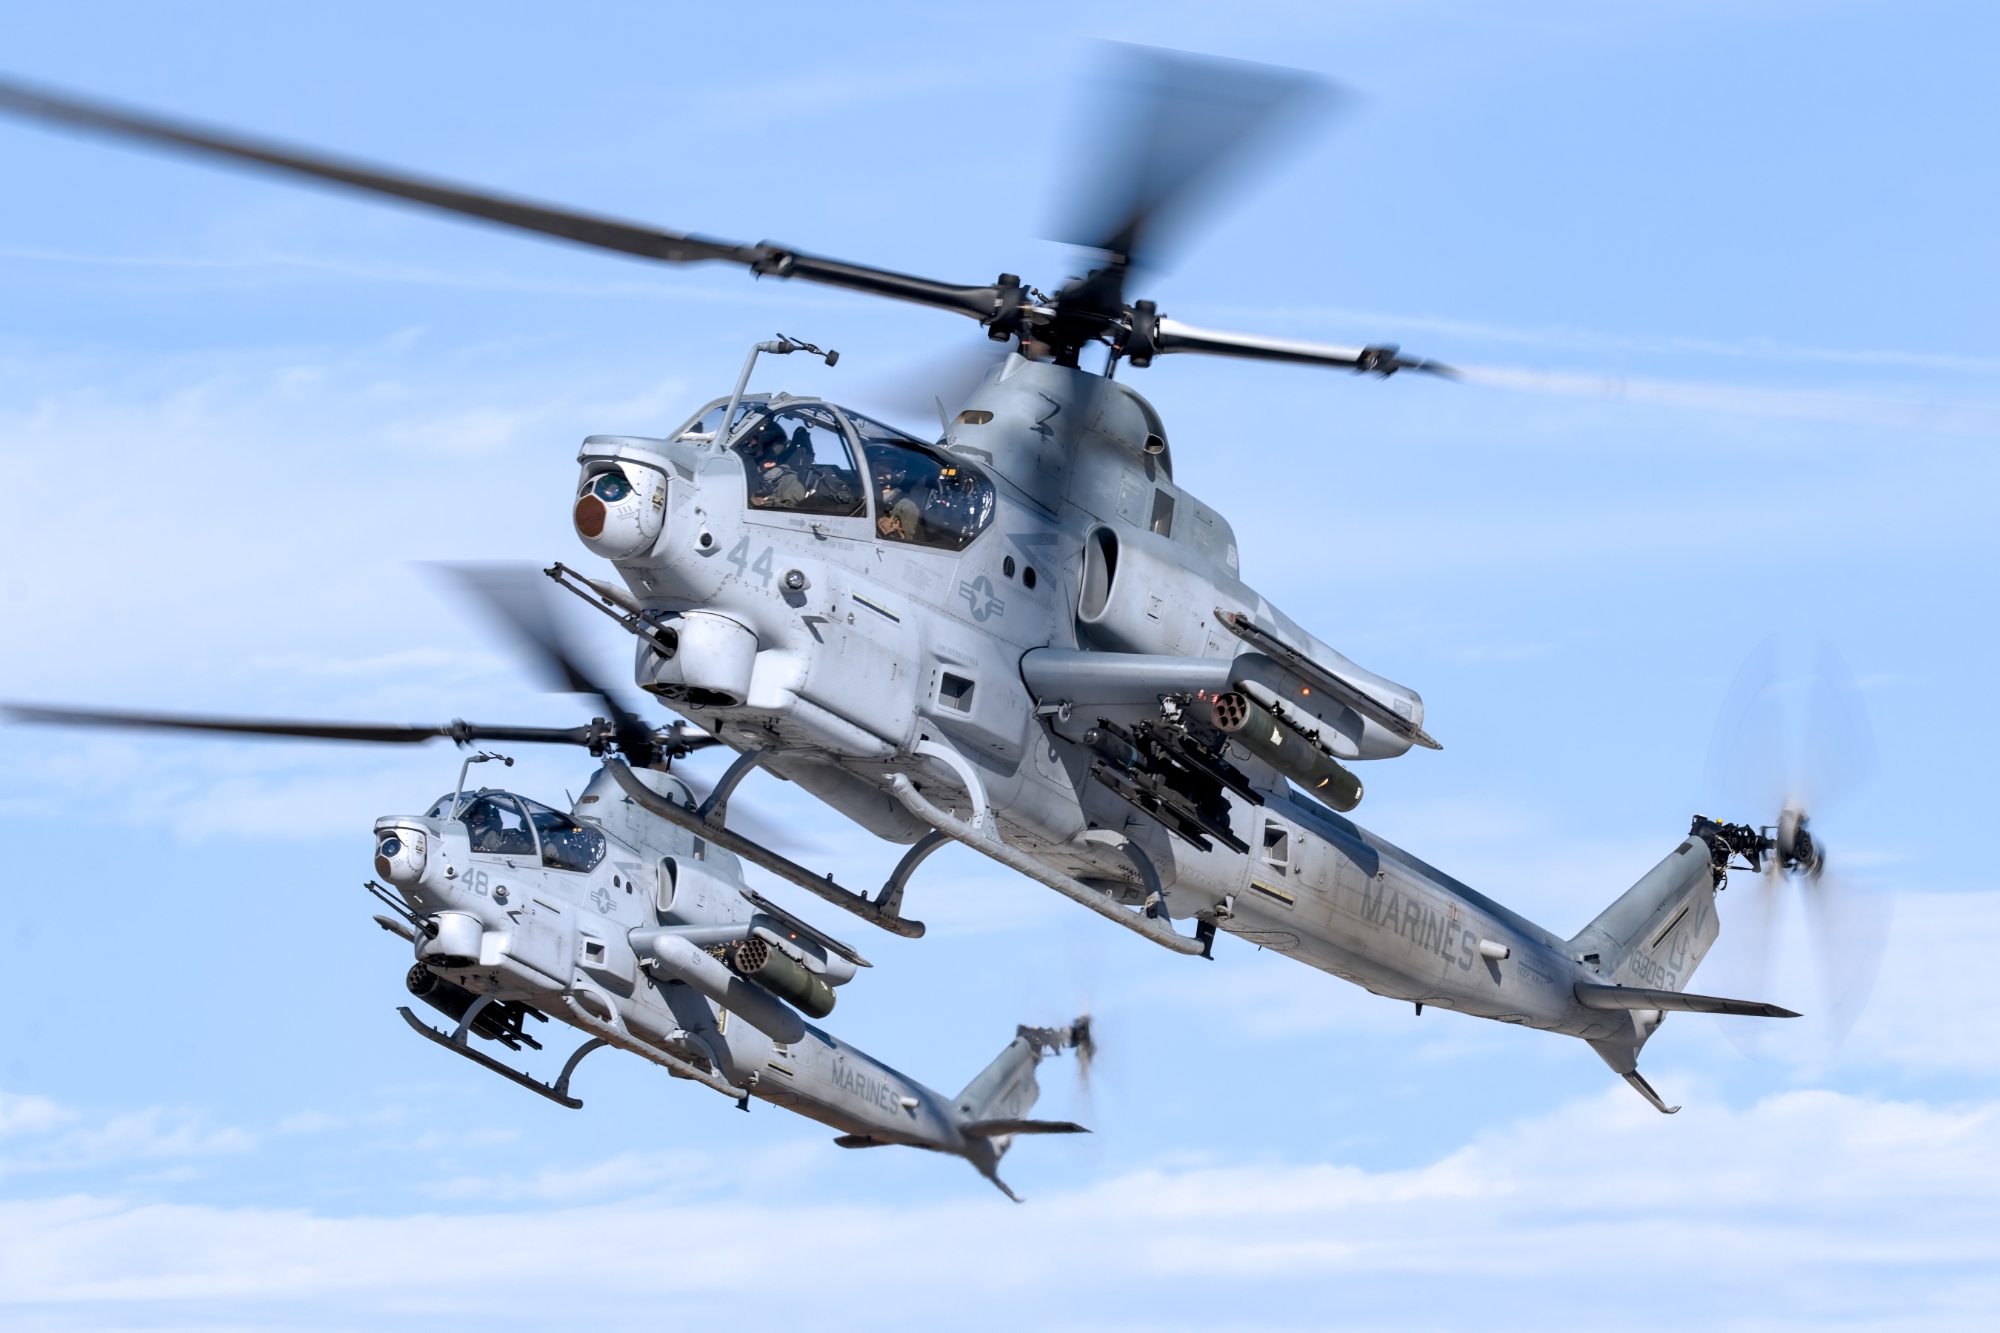 Contrato de 455 millones de dólares: Nigeria compra 12 helicópteros de ataque AH-1Z Viper a Bell